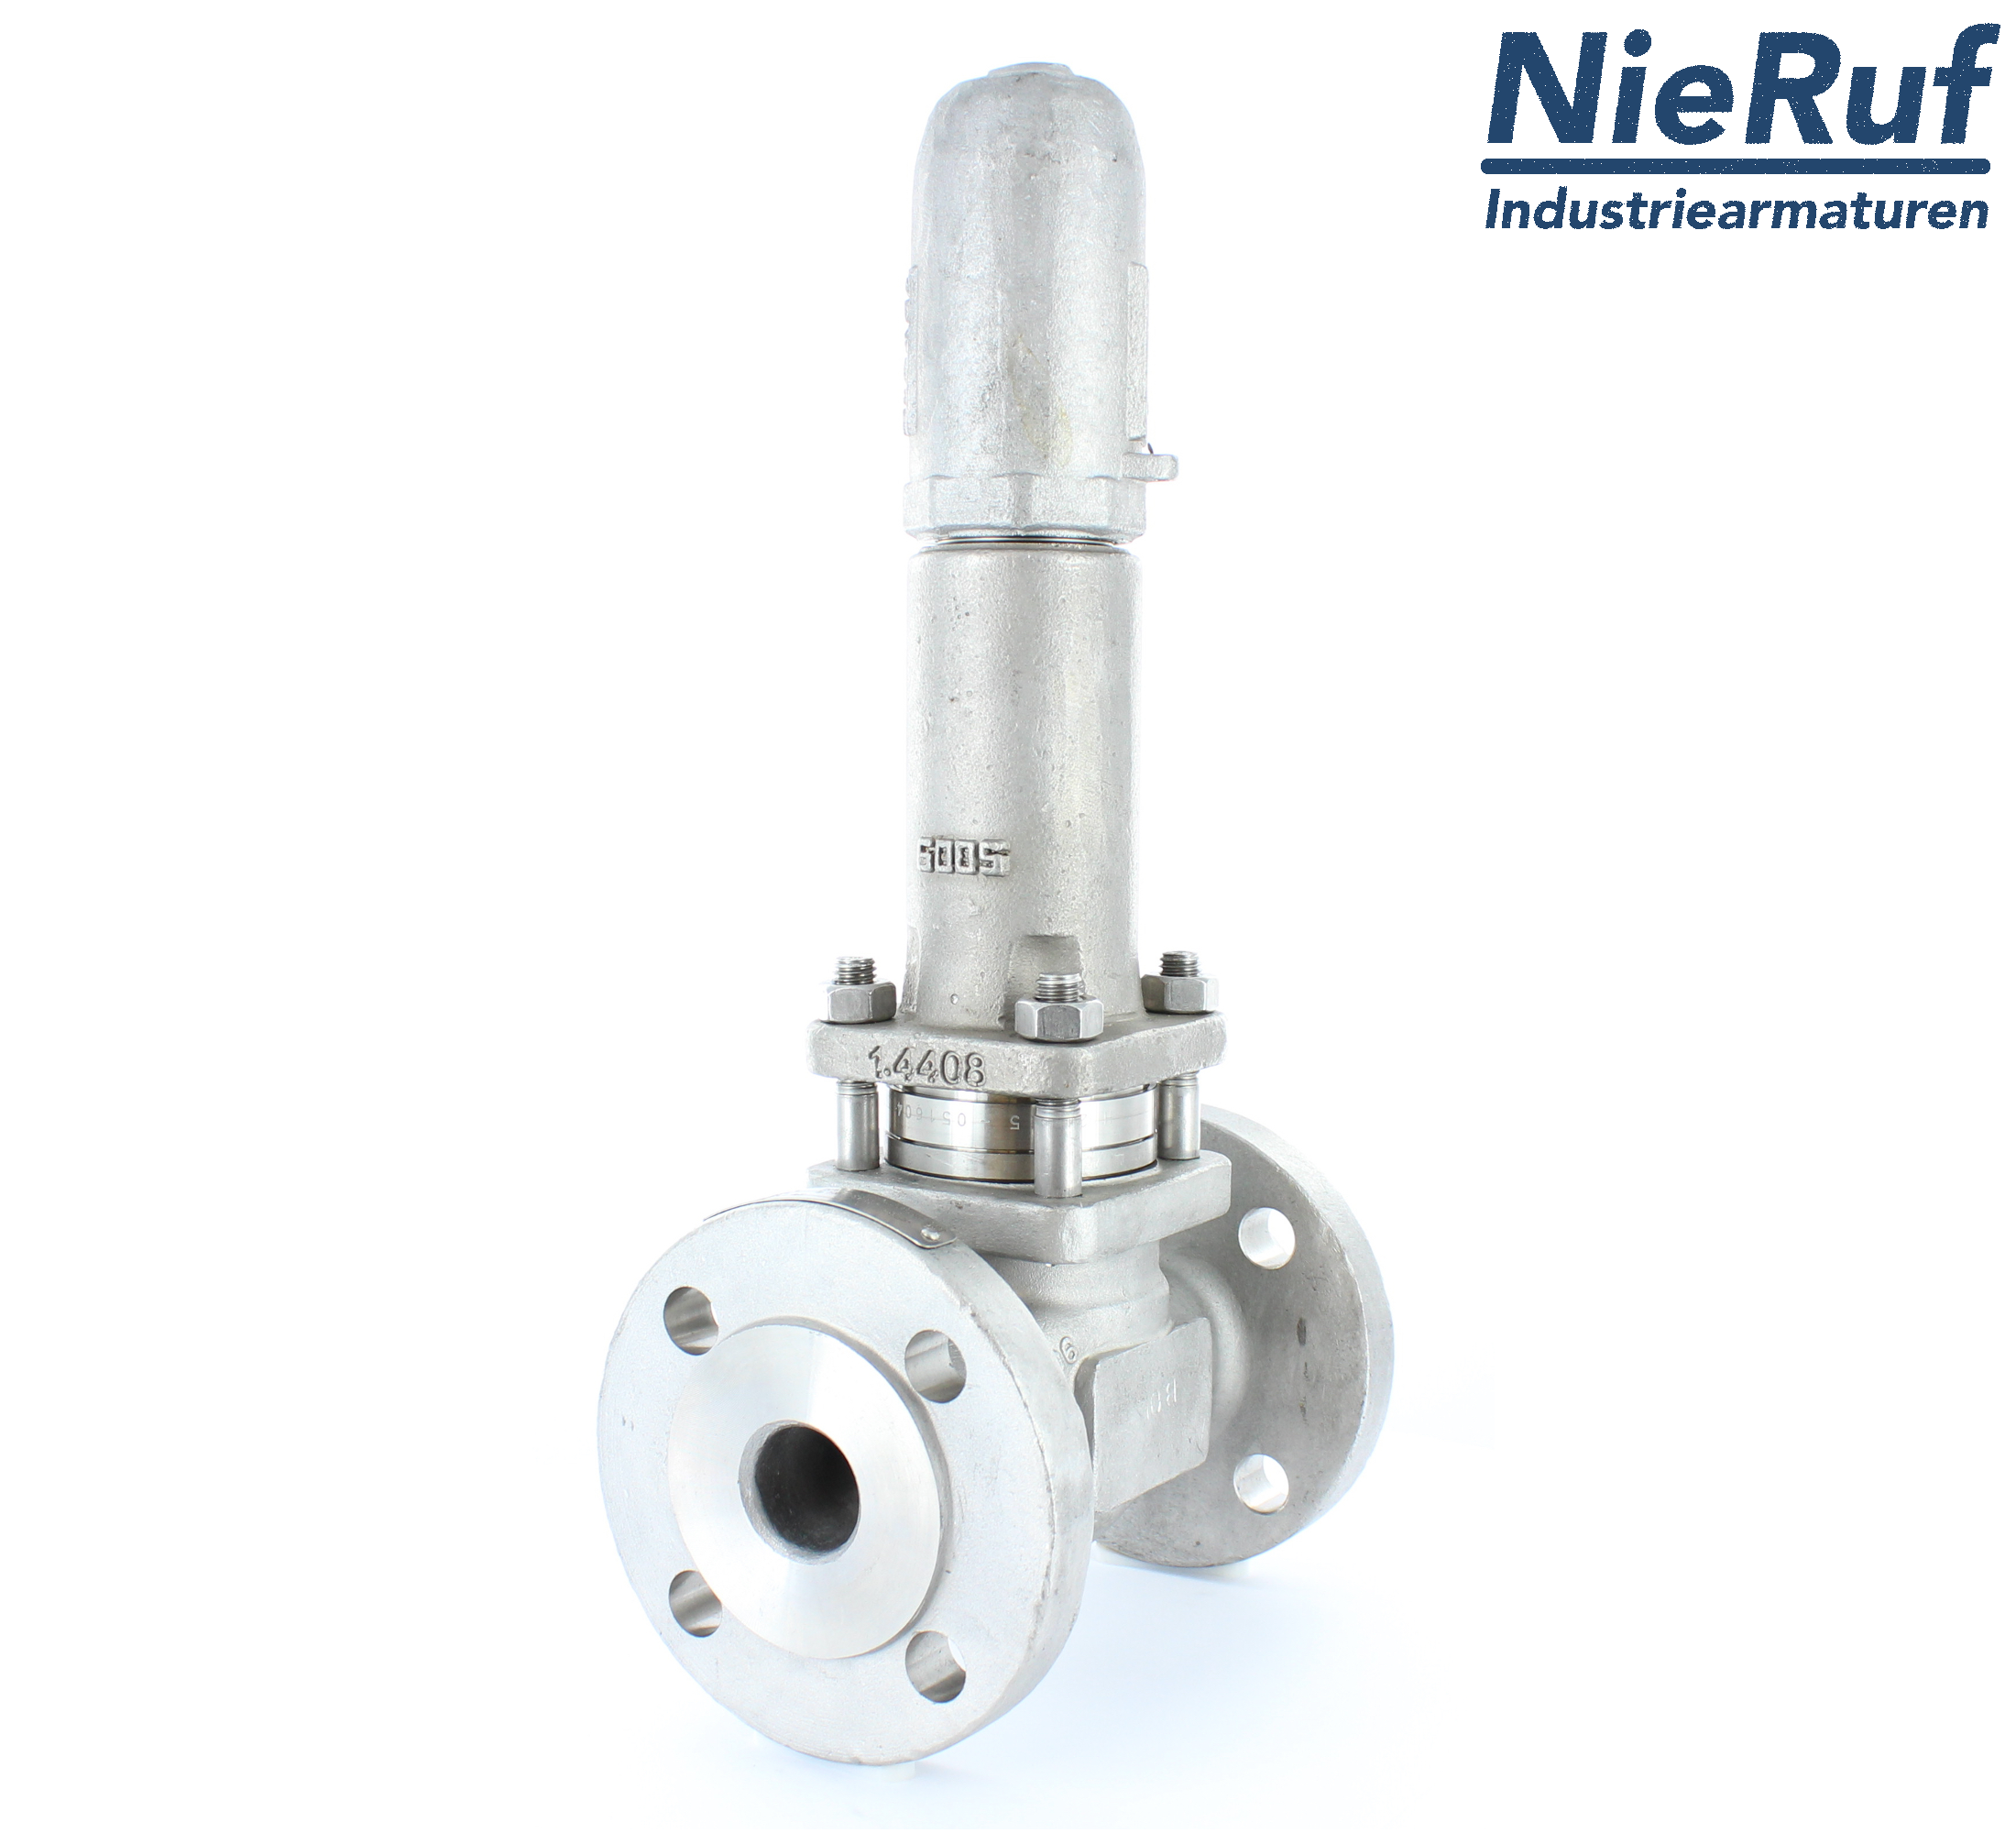 piston overflow valve DN 20 UV13 cast iron 1.0619+N 1,0 - 3,0 bar